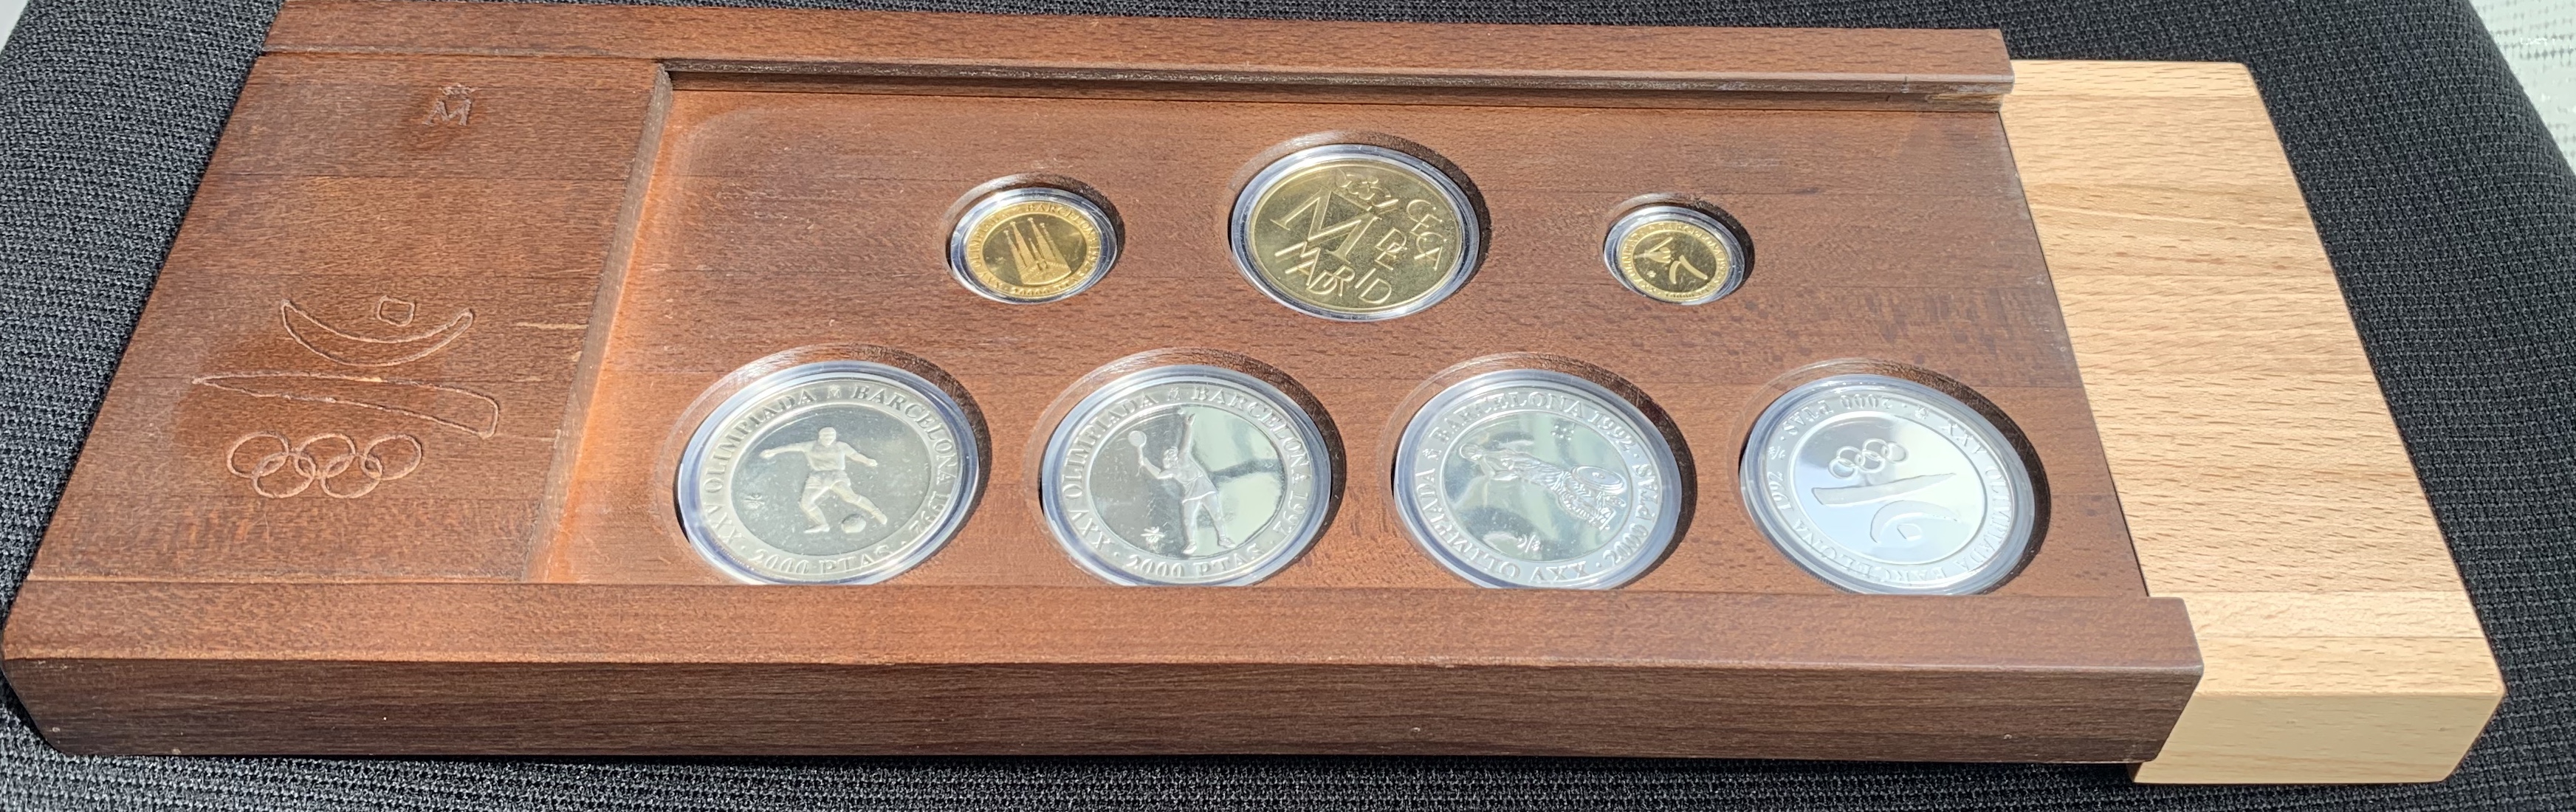 1992 スペイン バルセロナ オリンピック 開催記念 プルーフ銀貨 4種